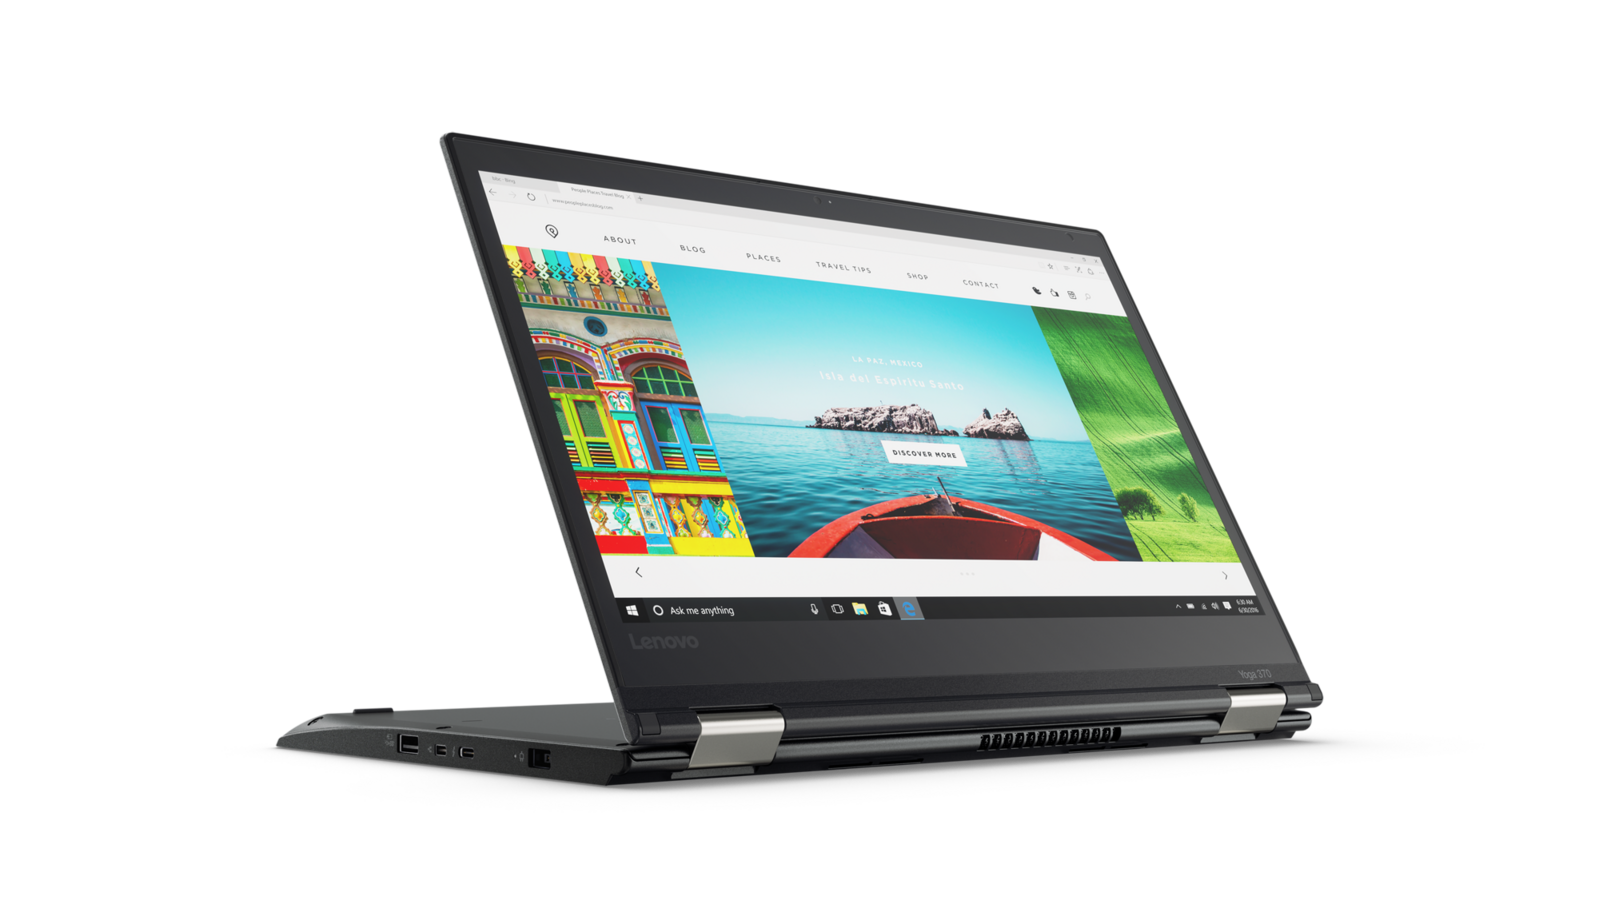 Lenovo ThinkPad Yoga 370 Intel i5 7300u 2.60Ghz 8GB 256GB SSD 13.3" FHD Touch Win 10 Image 1